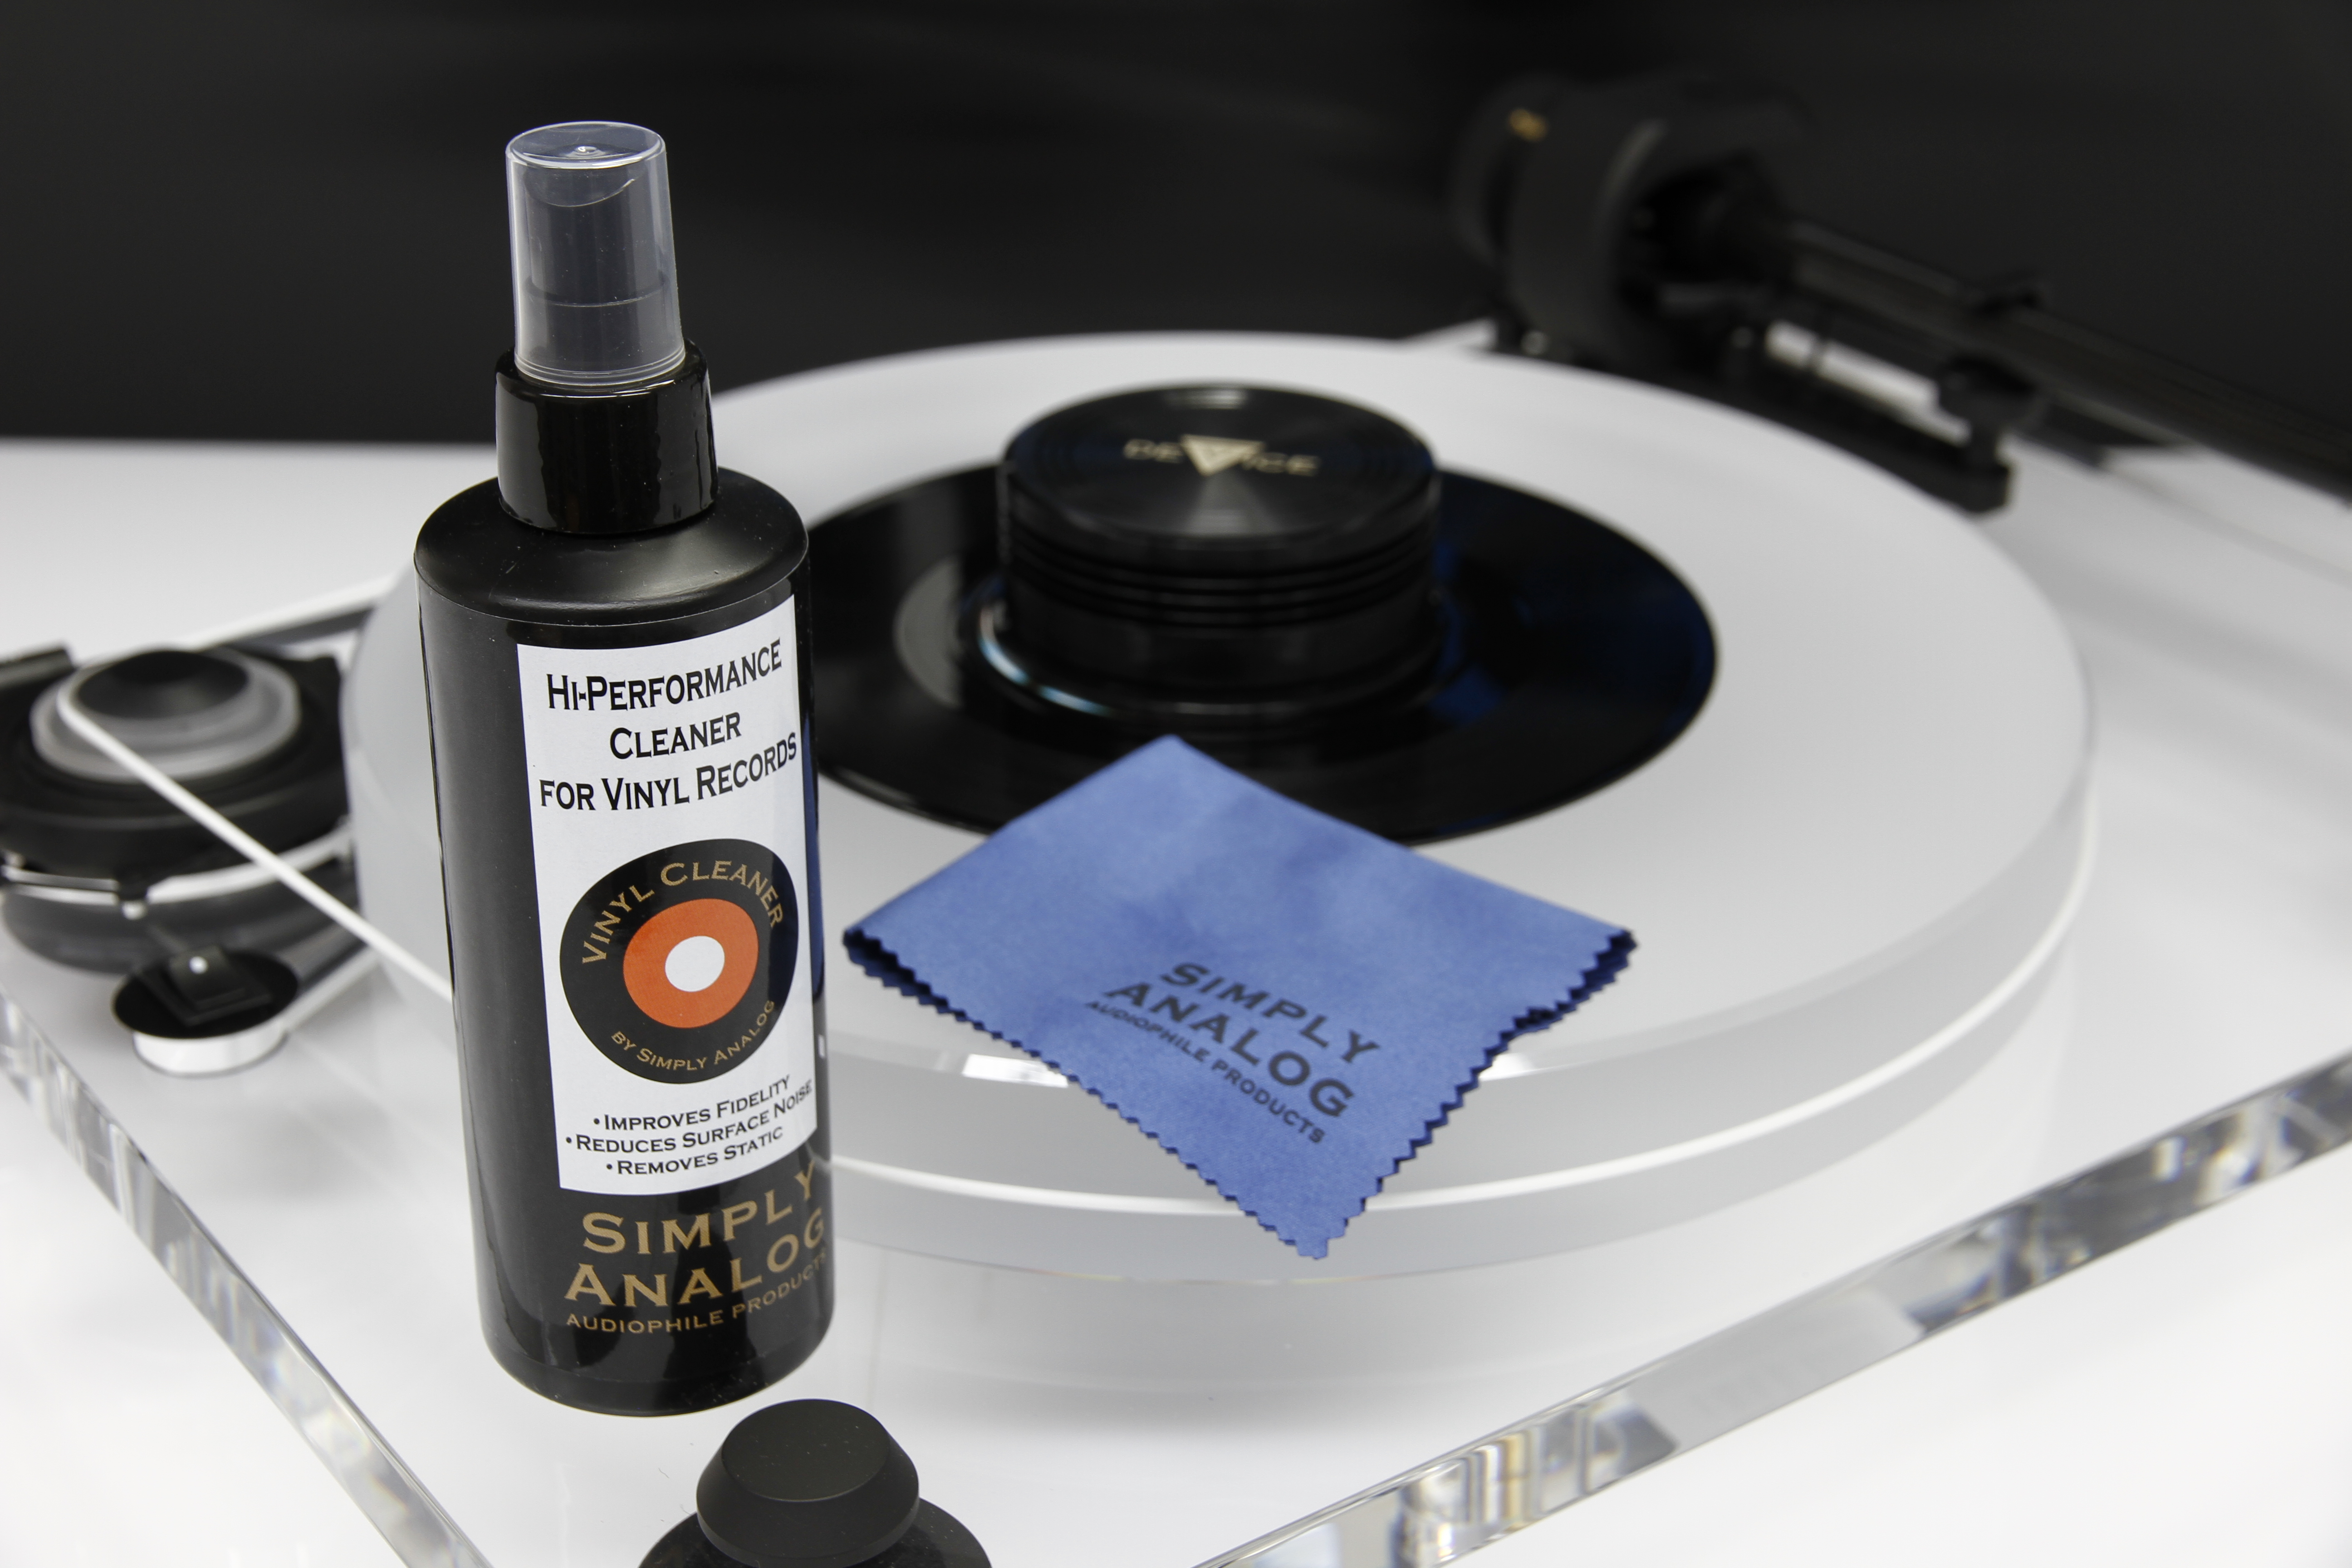 Empfehlung Simply Analgo zur Reinigung und Pflege von Vinyl und Acryl